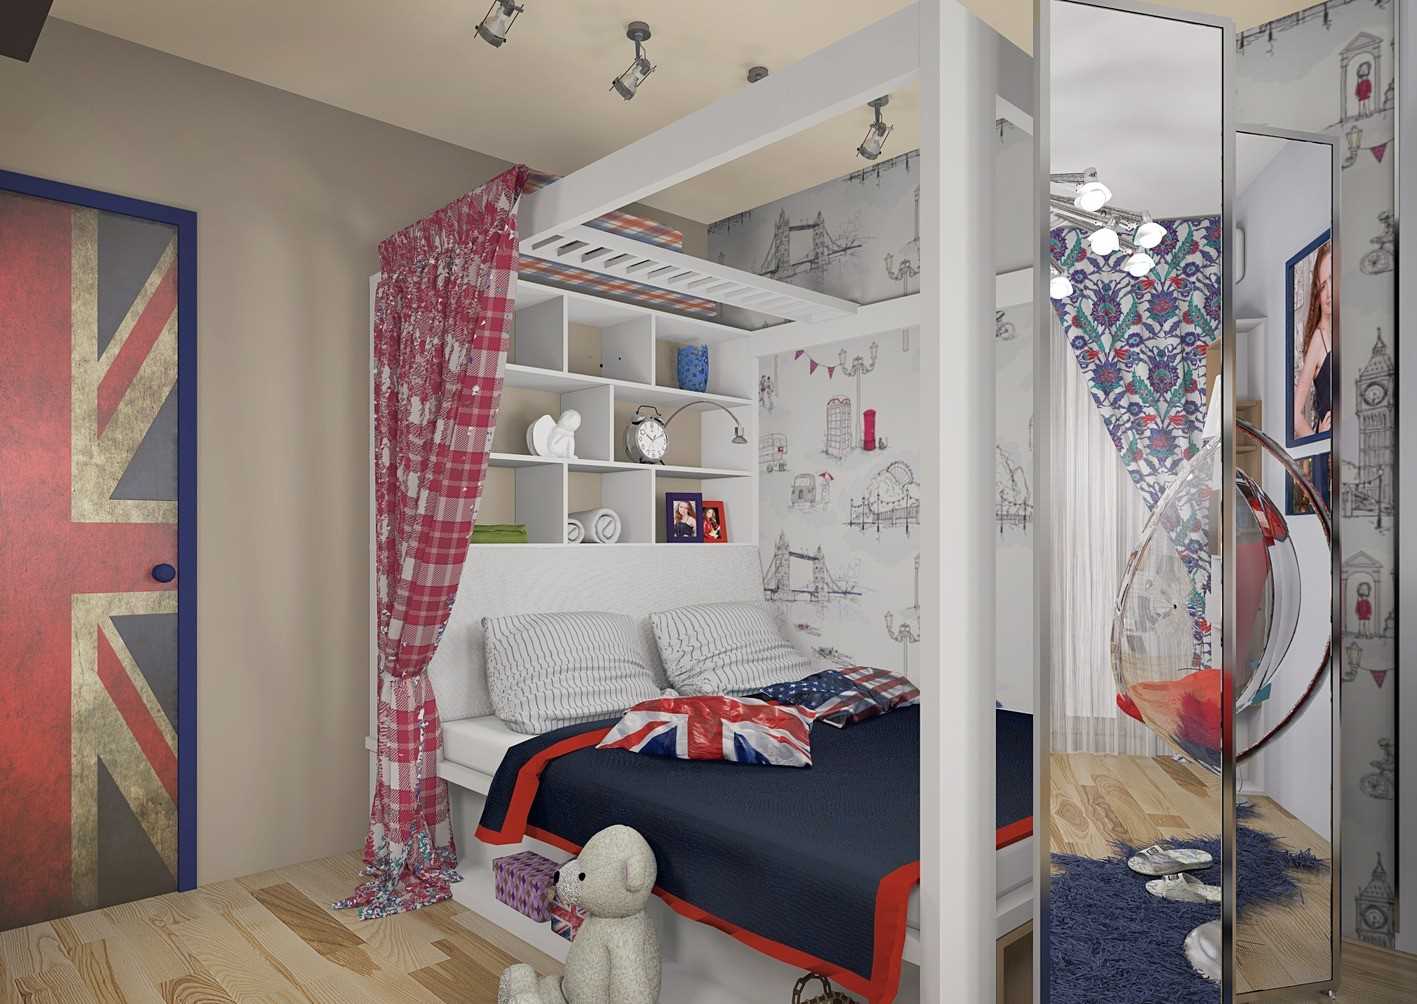 Создаем идеальный дизайн комнаты девочки-подростка